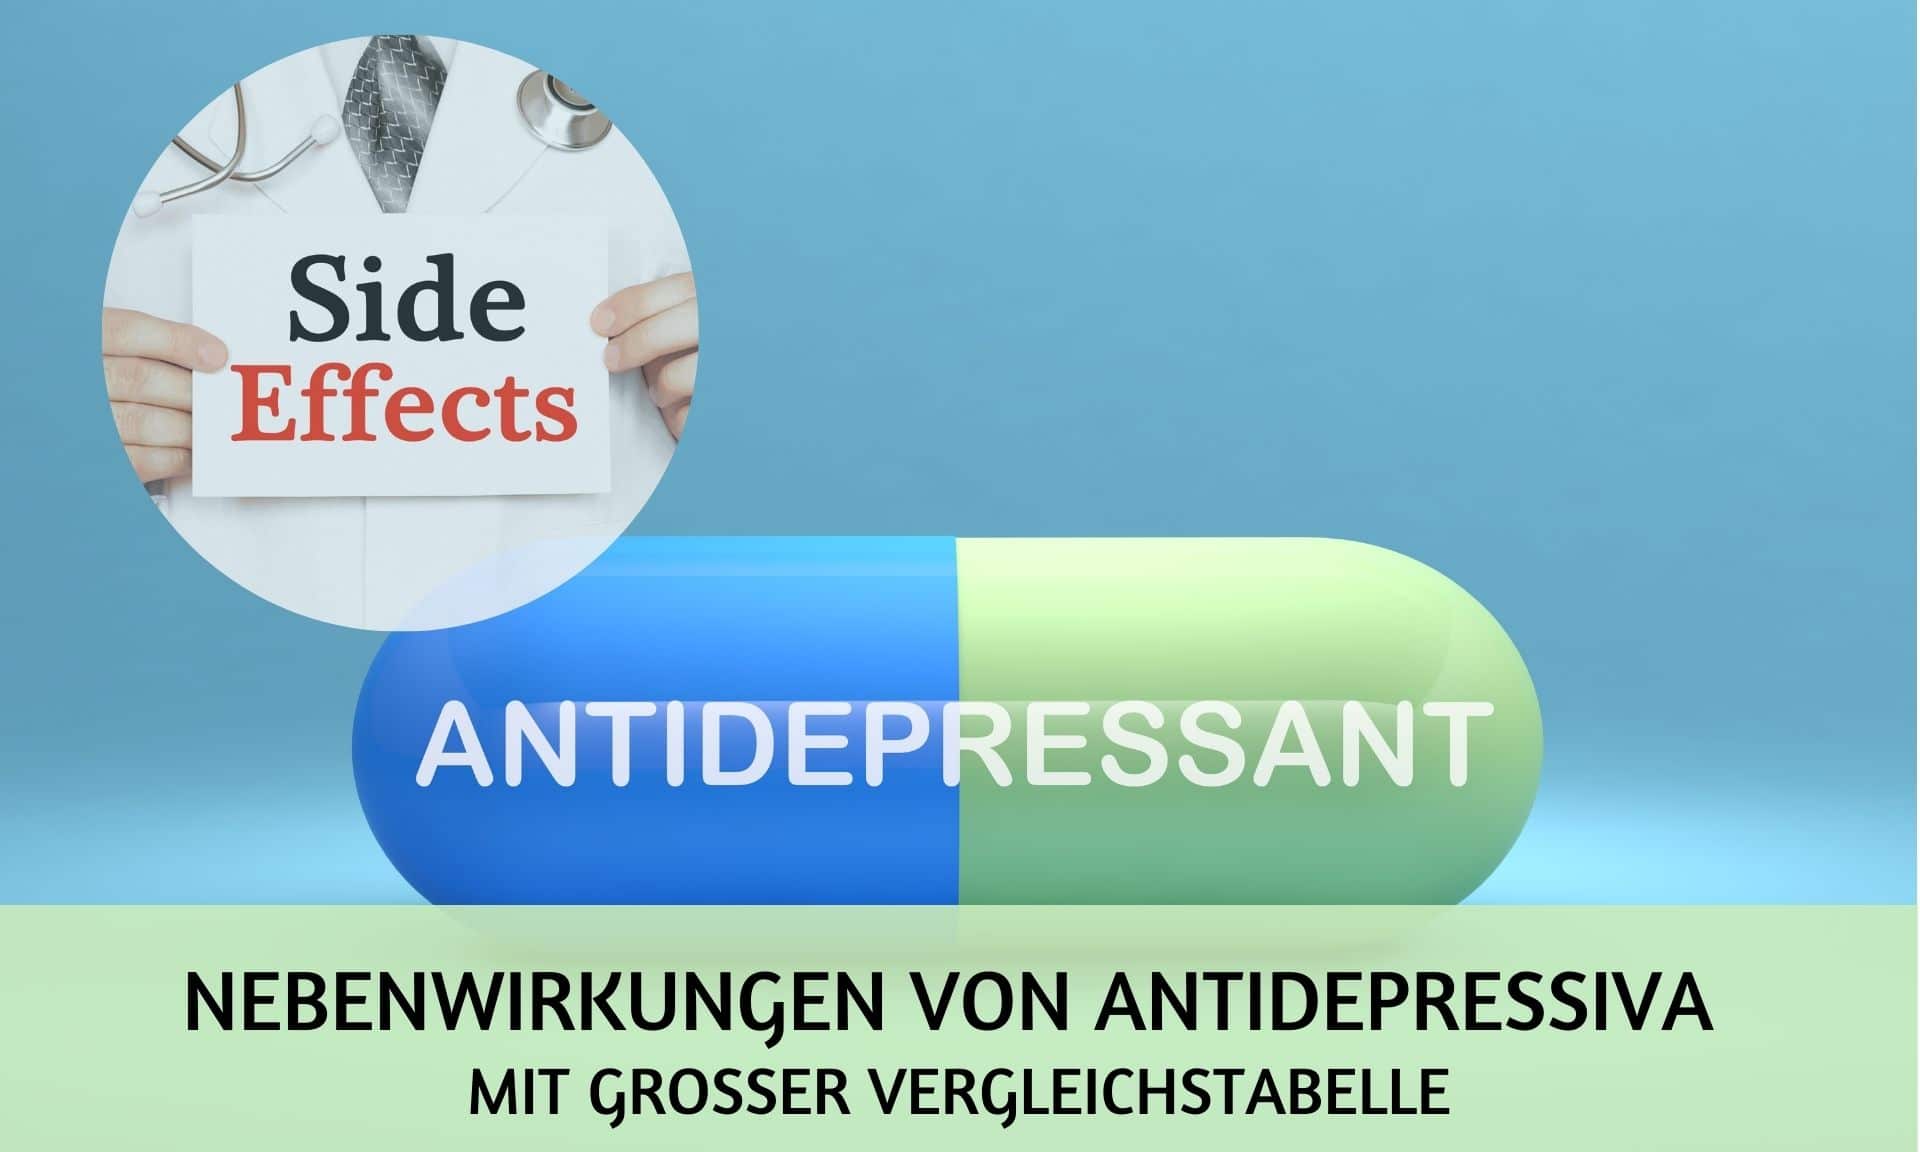 Antidepressiva-Nebenwirkungen: mit großer Liste und Vergleichstabelle